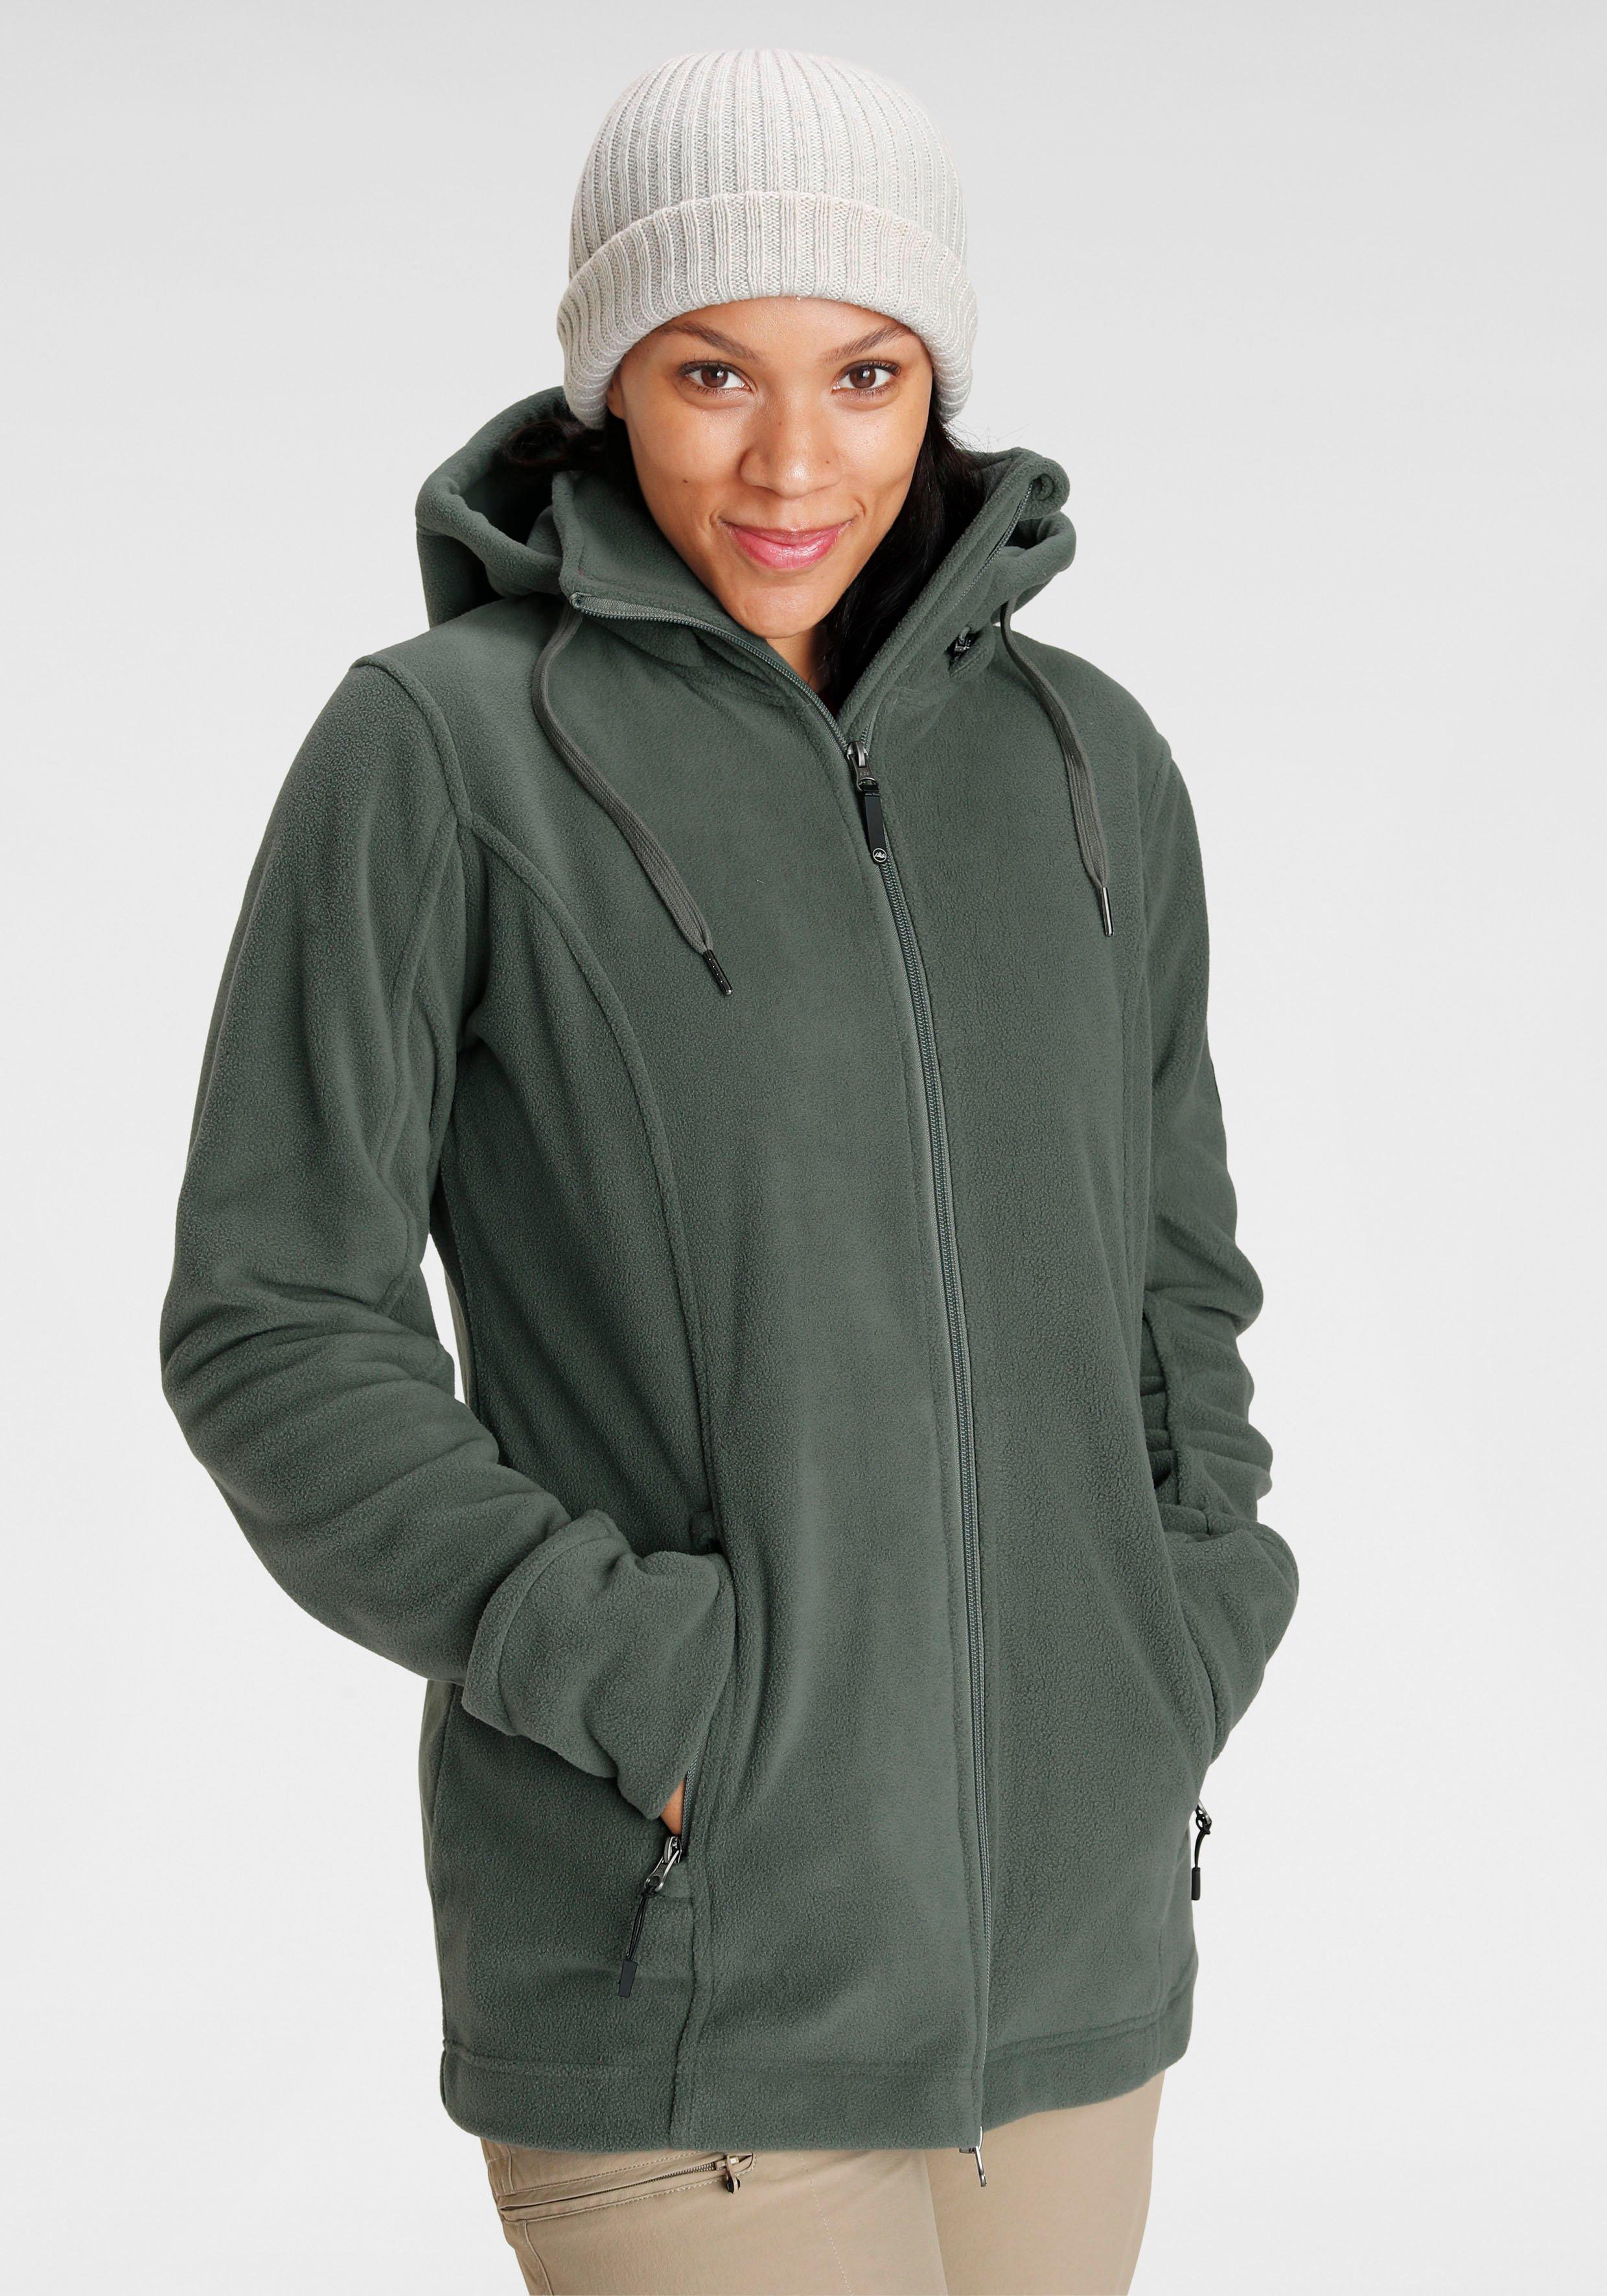 Damen Jacken & Mäntel große Größen grün › Größe 58 | sheego ♥ Plus Size Mode | Regenjacken